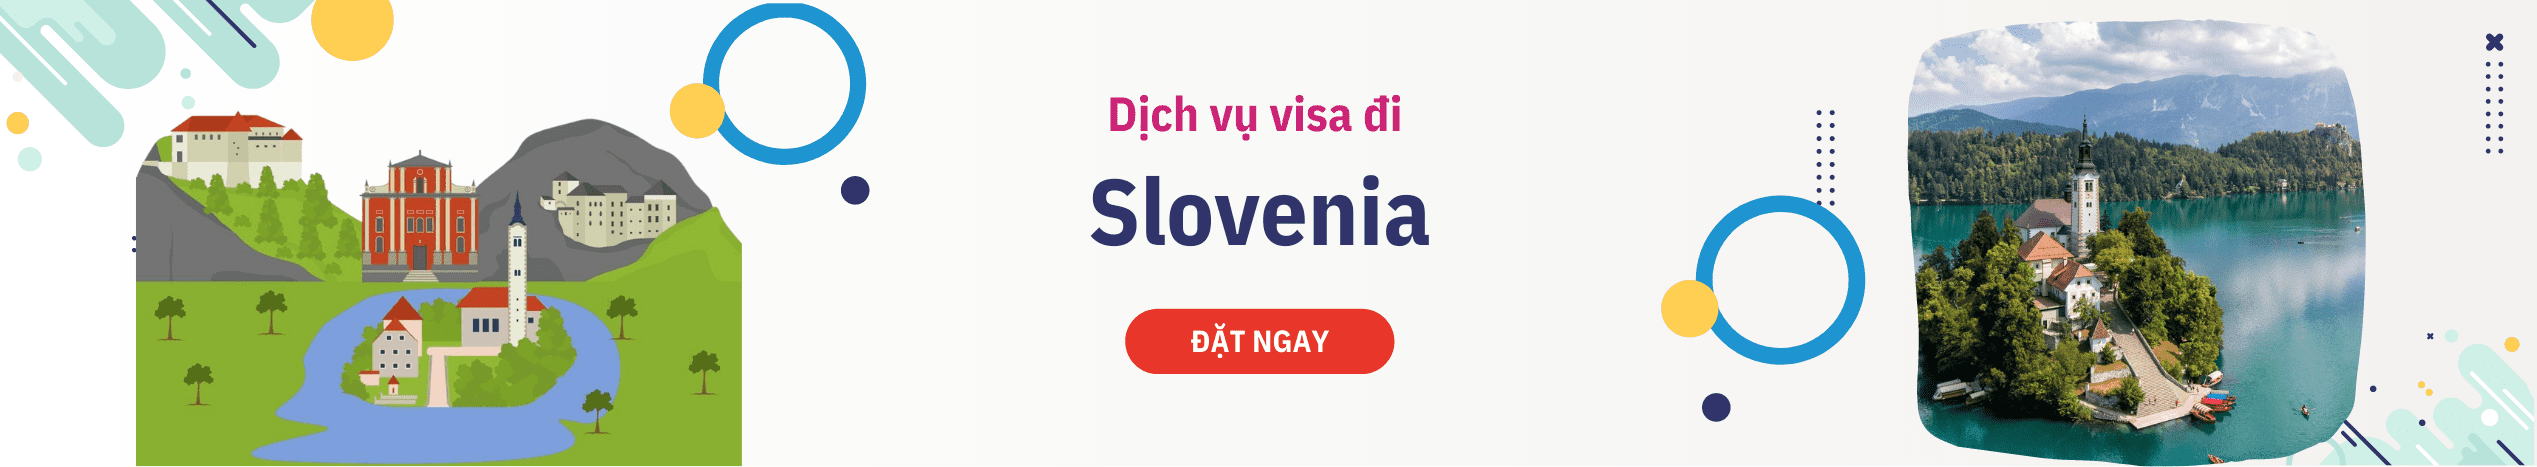 Hỗ trợ xin Visa Slovenia du lịch, công tác & thăm thân